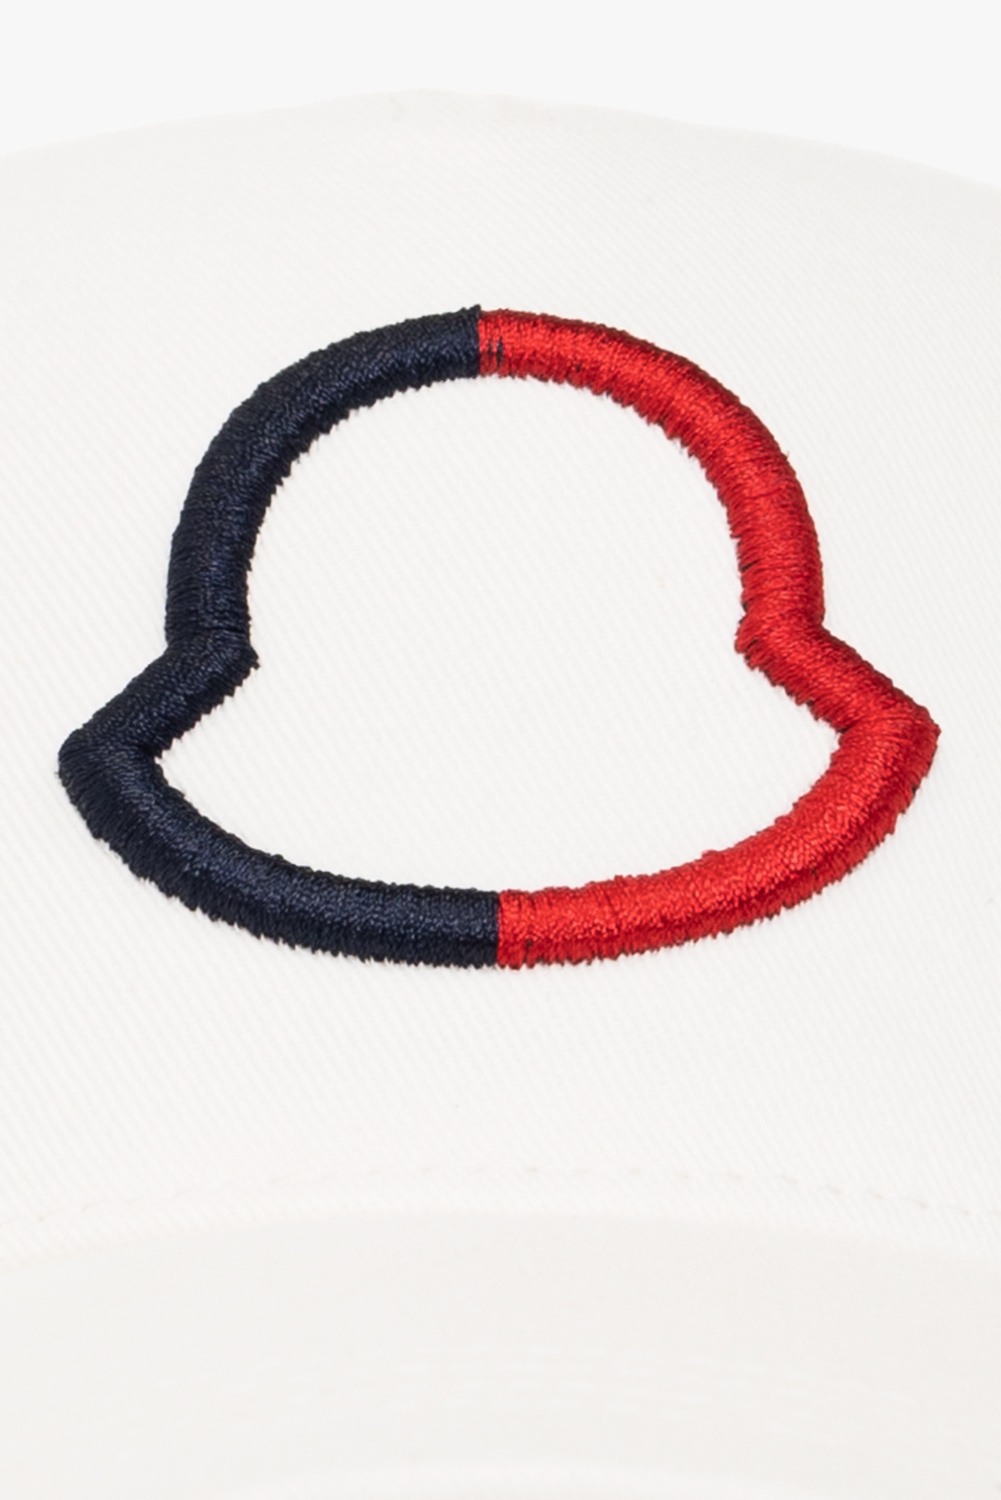 Moncler Man's Baroque Printed Cotton Cap With Logo